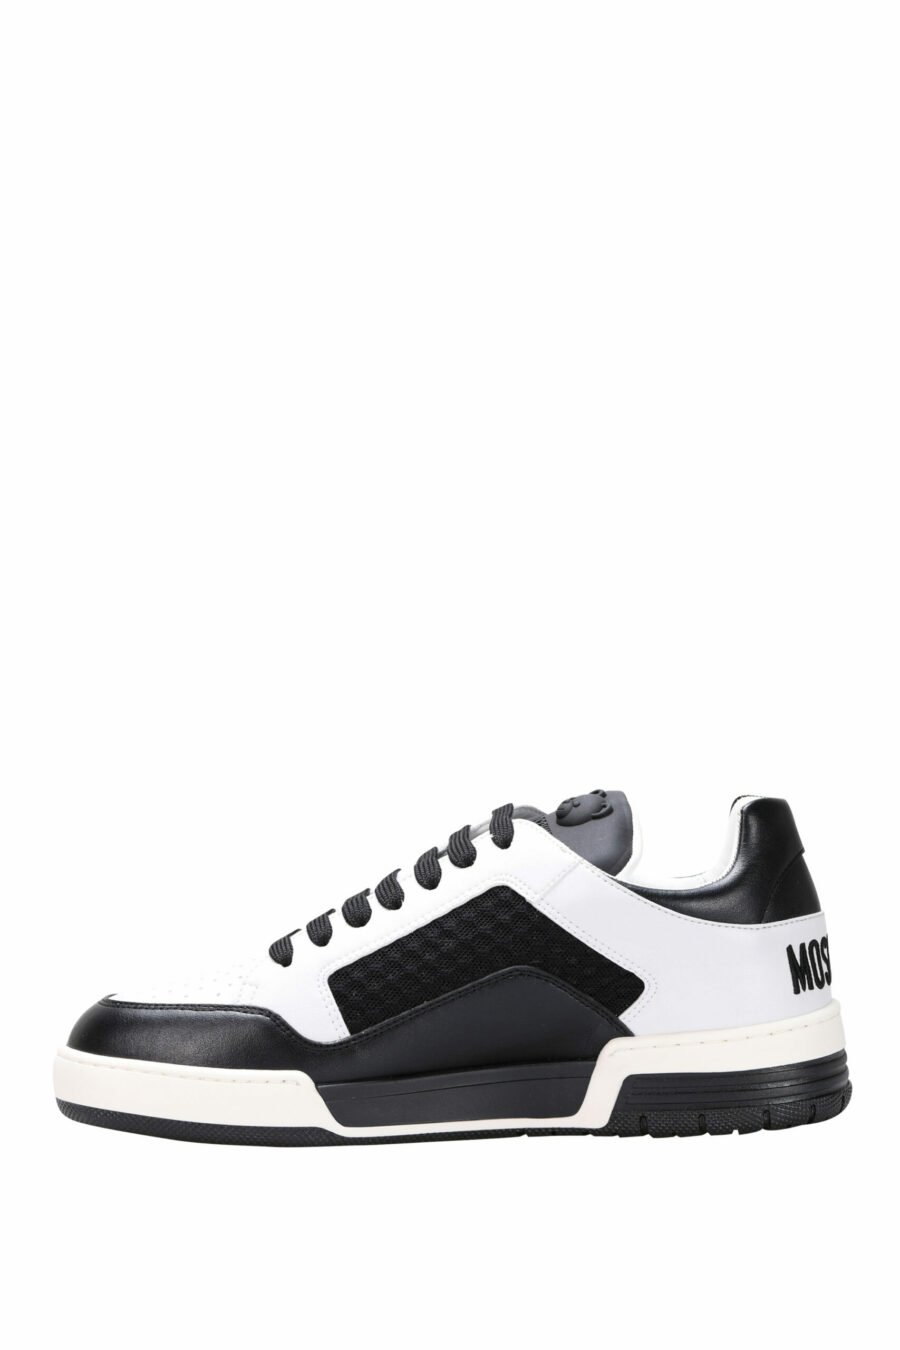 Chaussures bicolores noires et blanches "kevin40" avec minilogue - 8054388024457 2 scaled